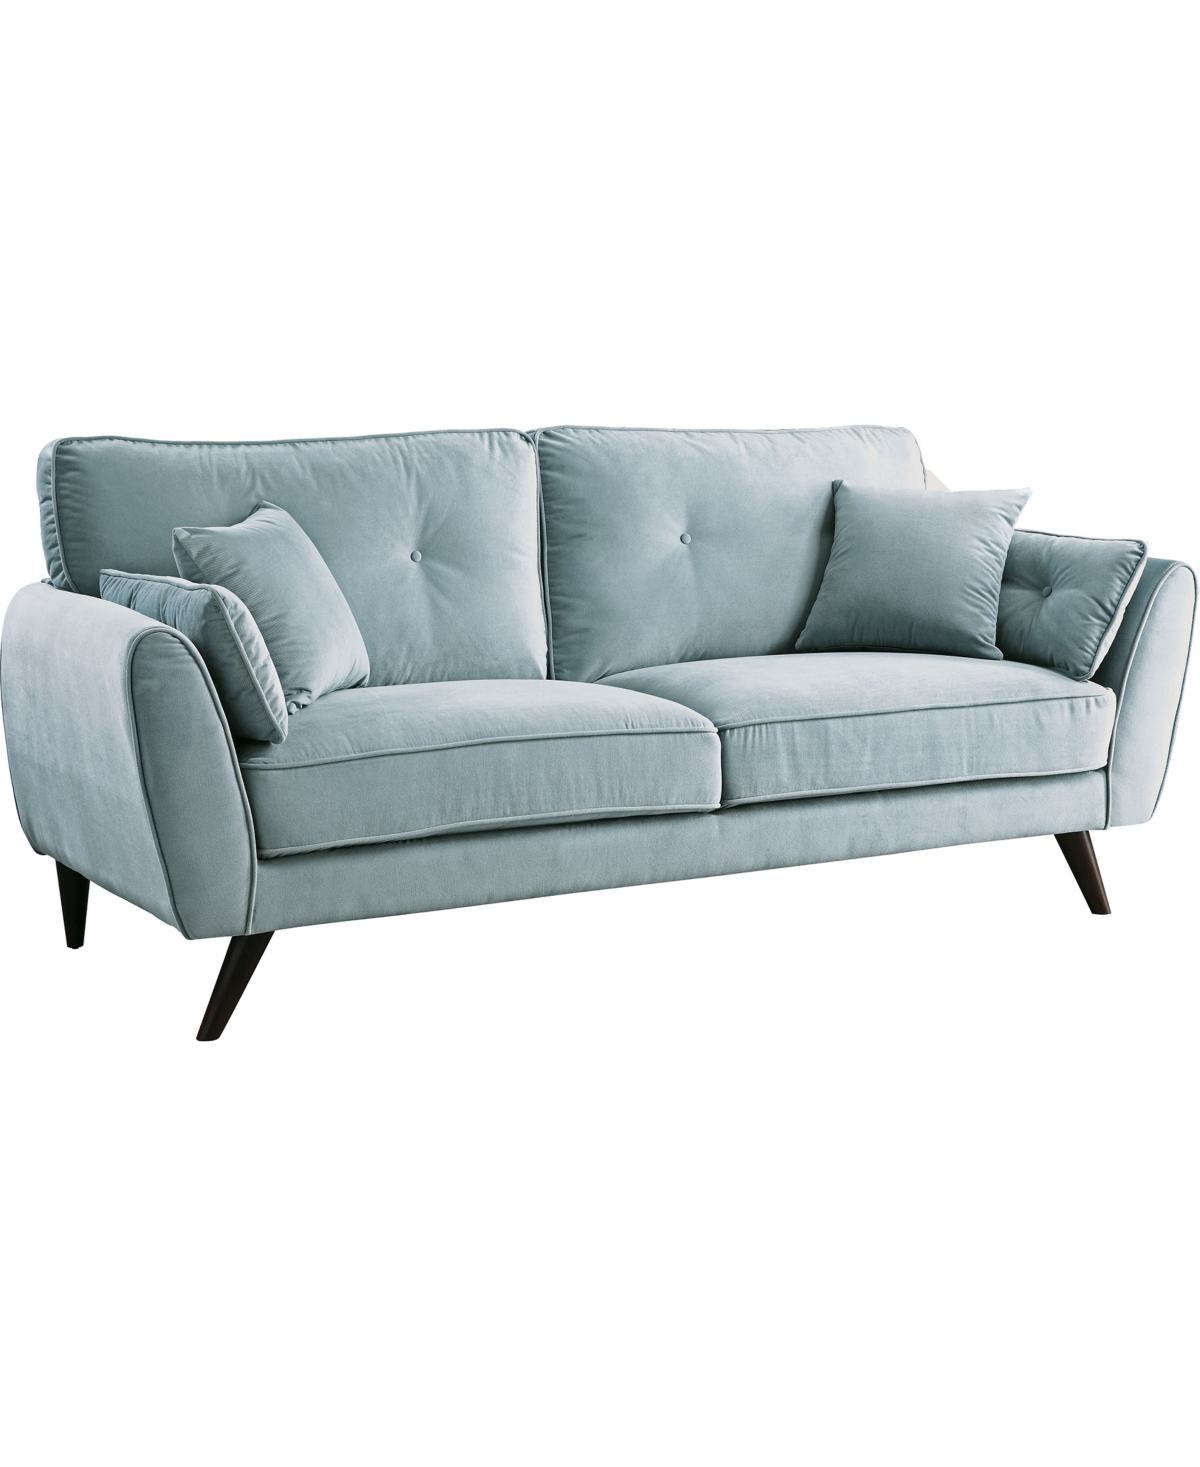 Hulla Upholstered Sofa